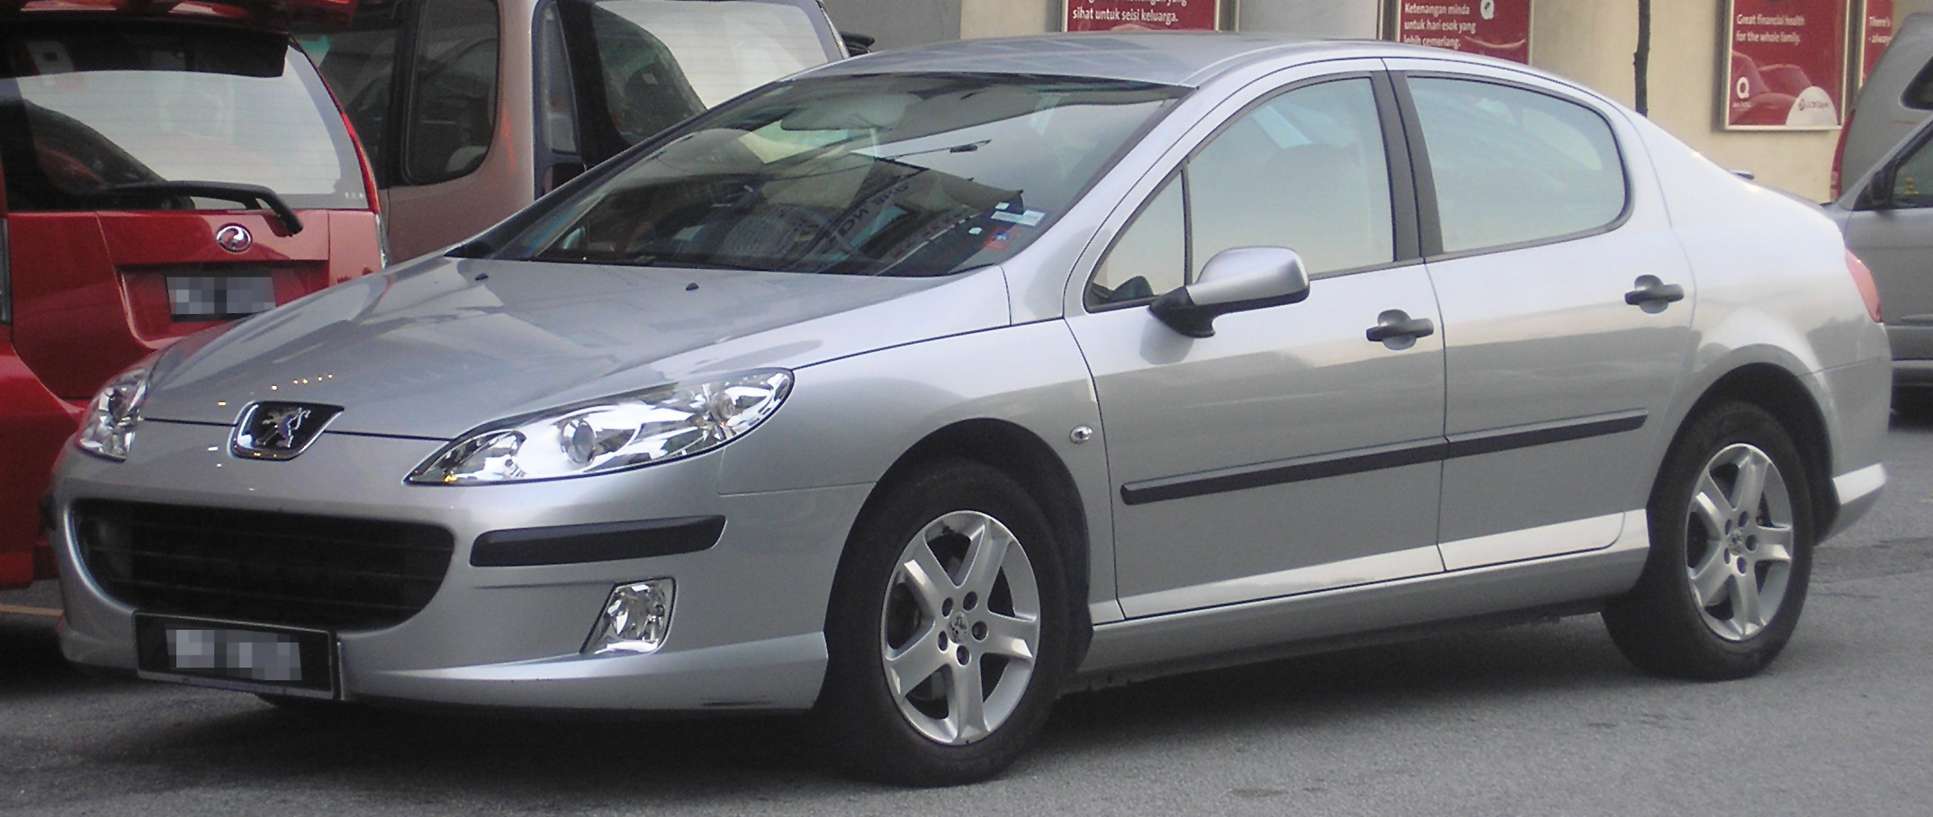 Peugeot 407 #7656706